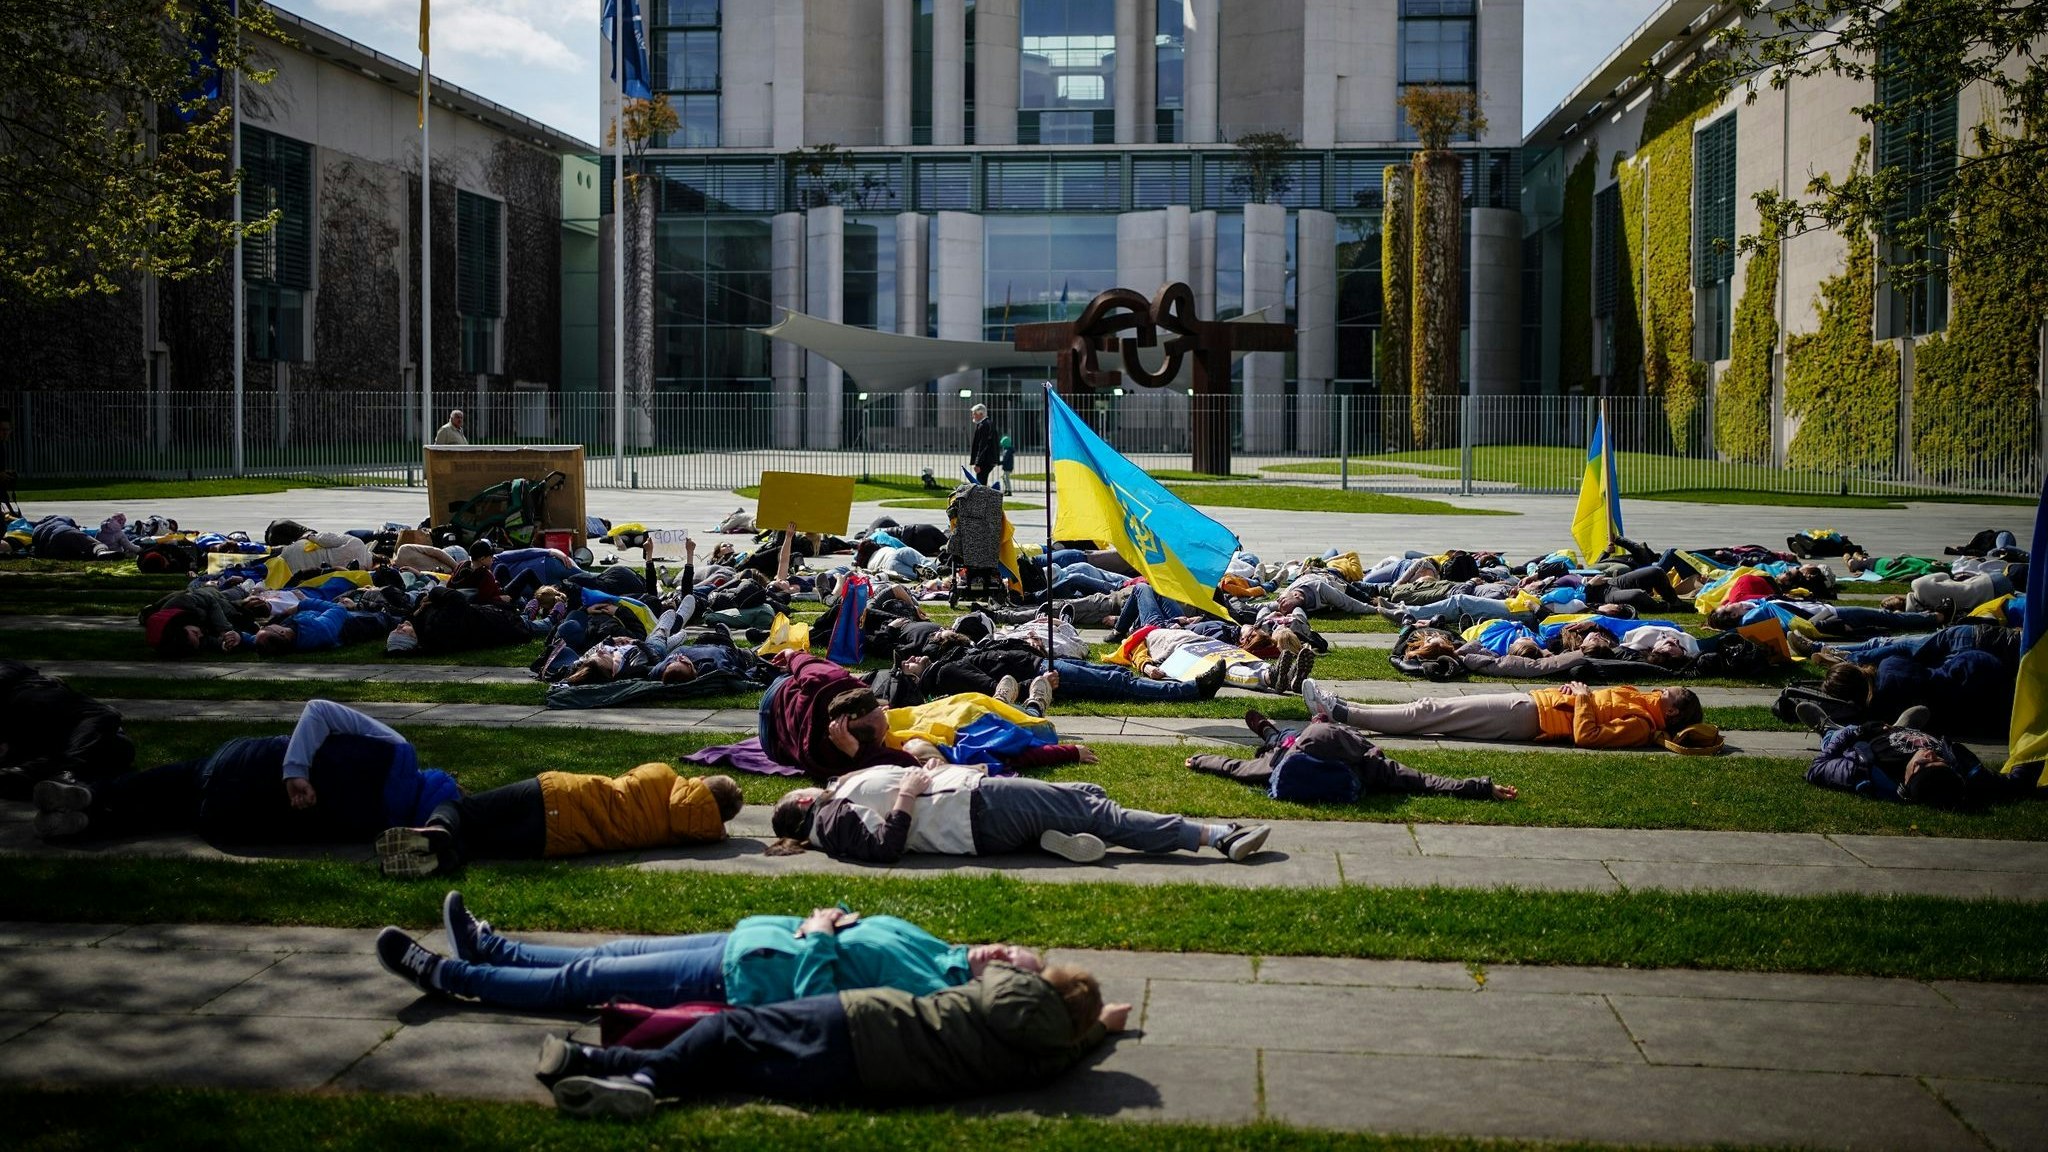 Auf dem Boden liegend protestieren diese Menschen vor dem Bundeskanzleramt gegen den Krieg in der Ukraine. Foto: dpa/Nietfeld